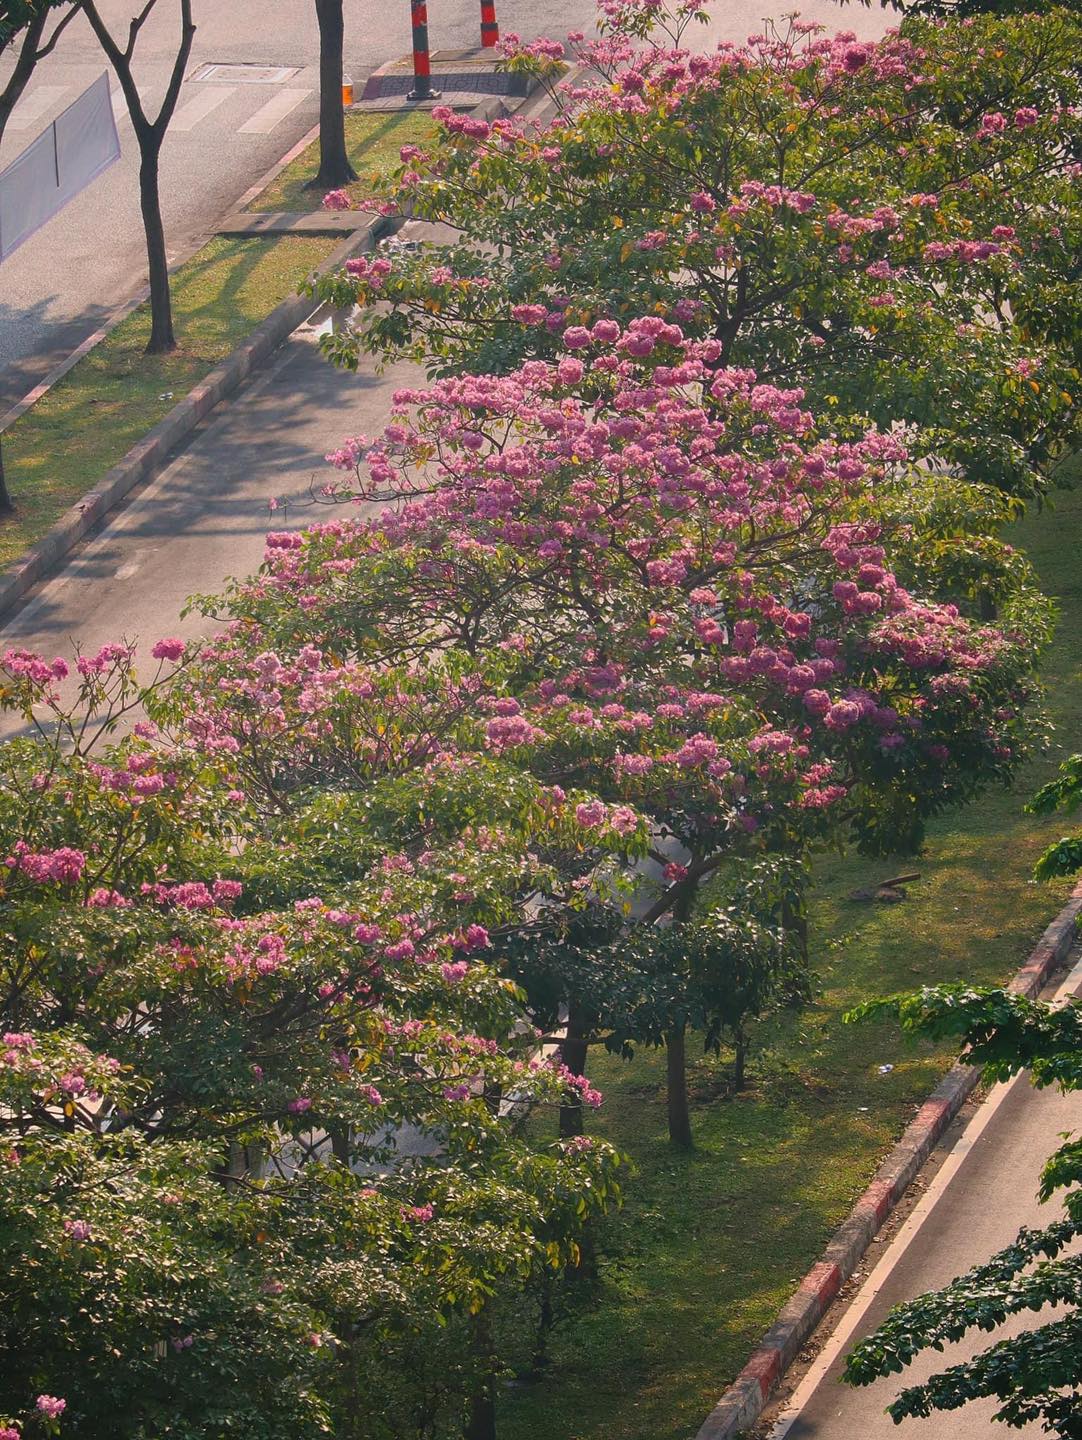 Mùa kèn hồng rợp trời Sài Gòn, chợt thấy thành phố mộng mơ biết bao giữa sắc hoa rực rỡ- Ảnh 22.